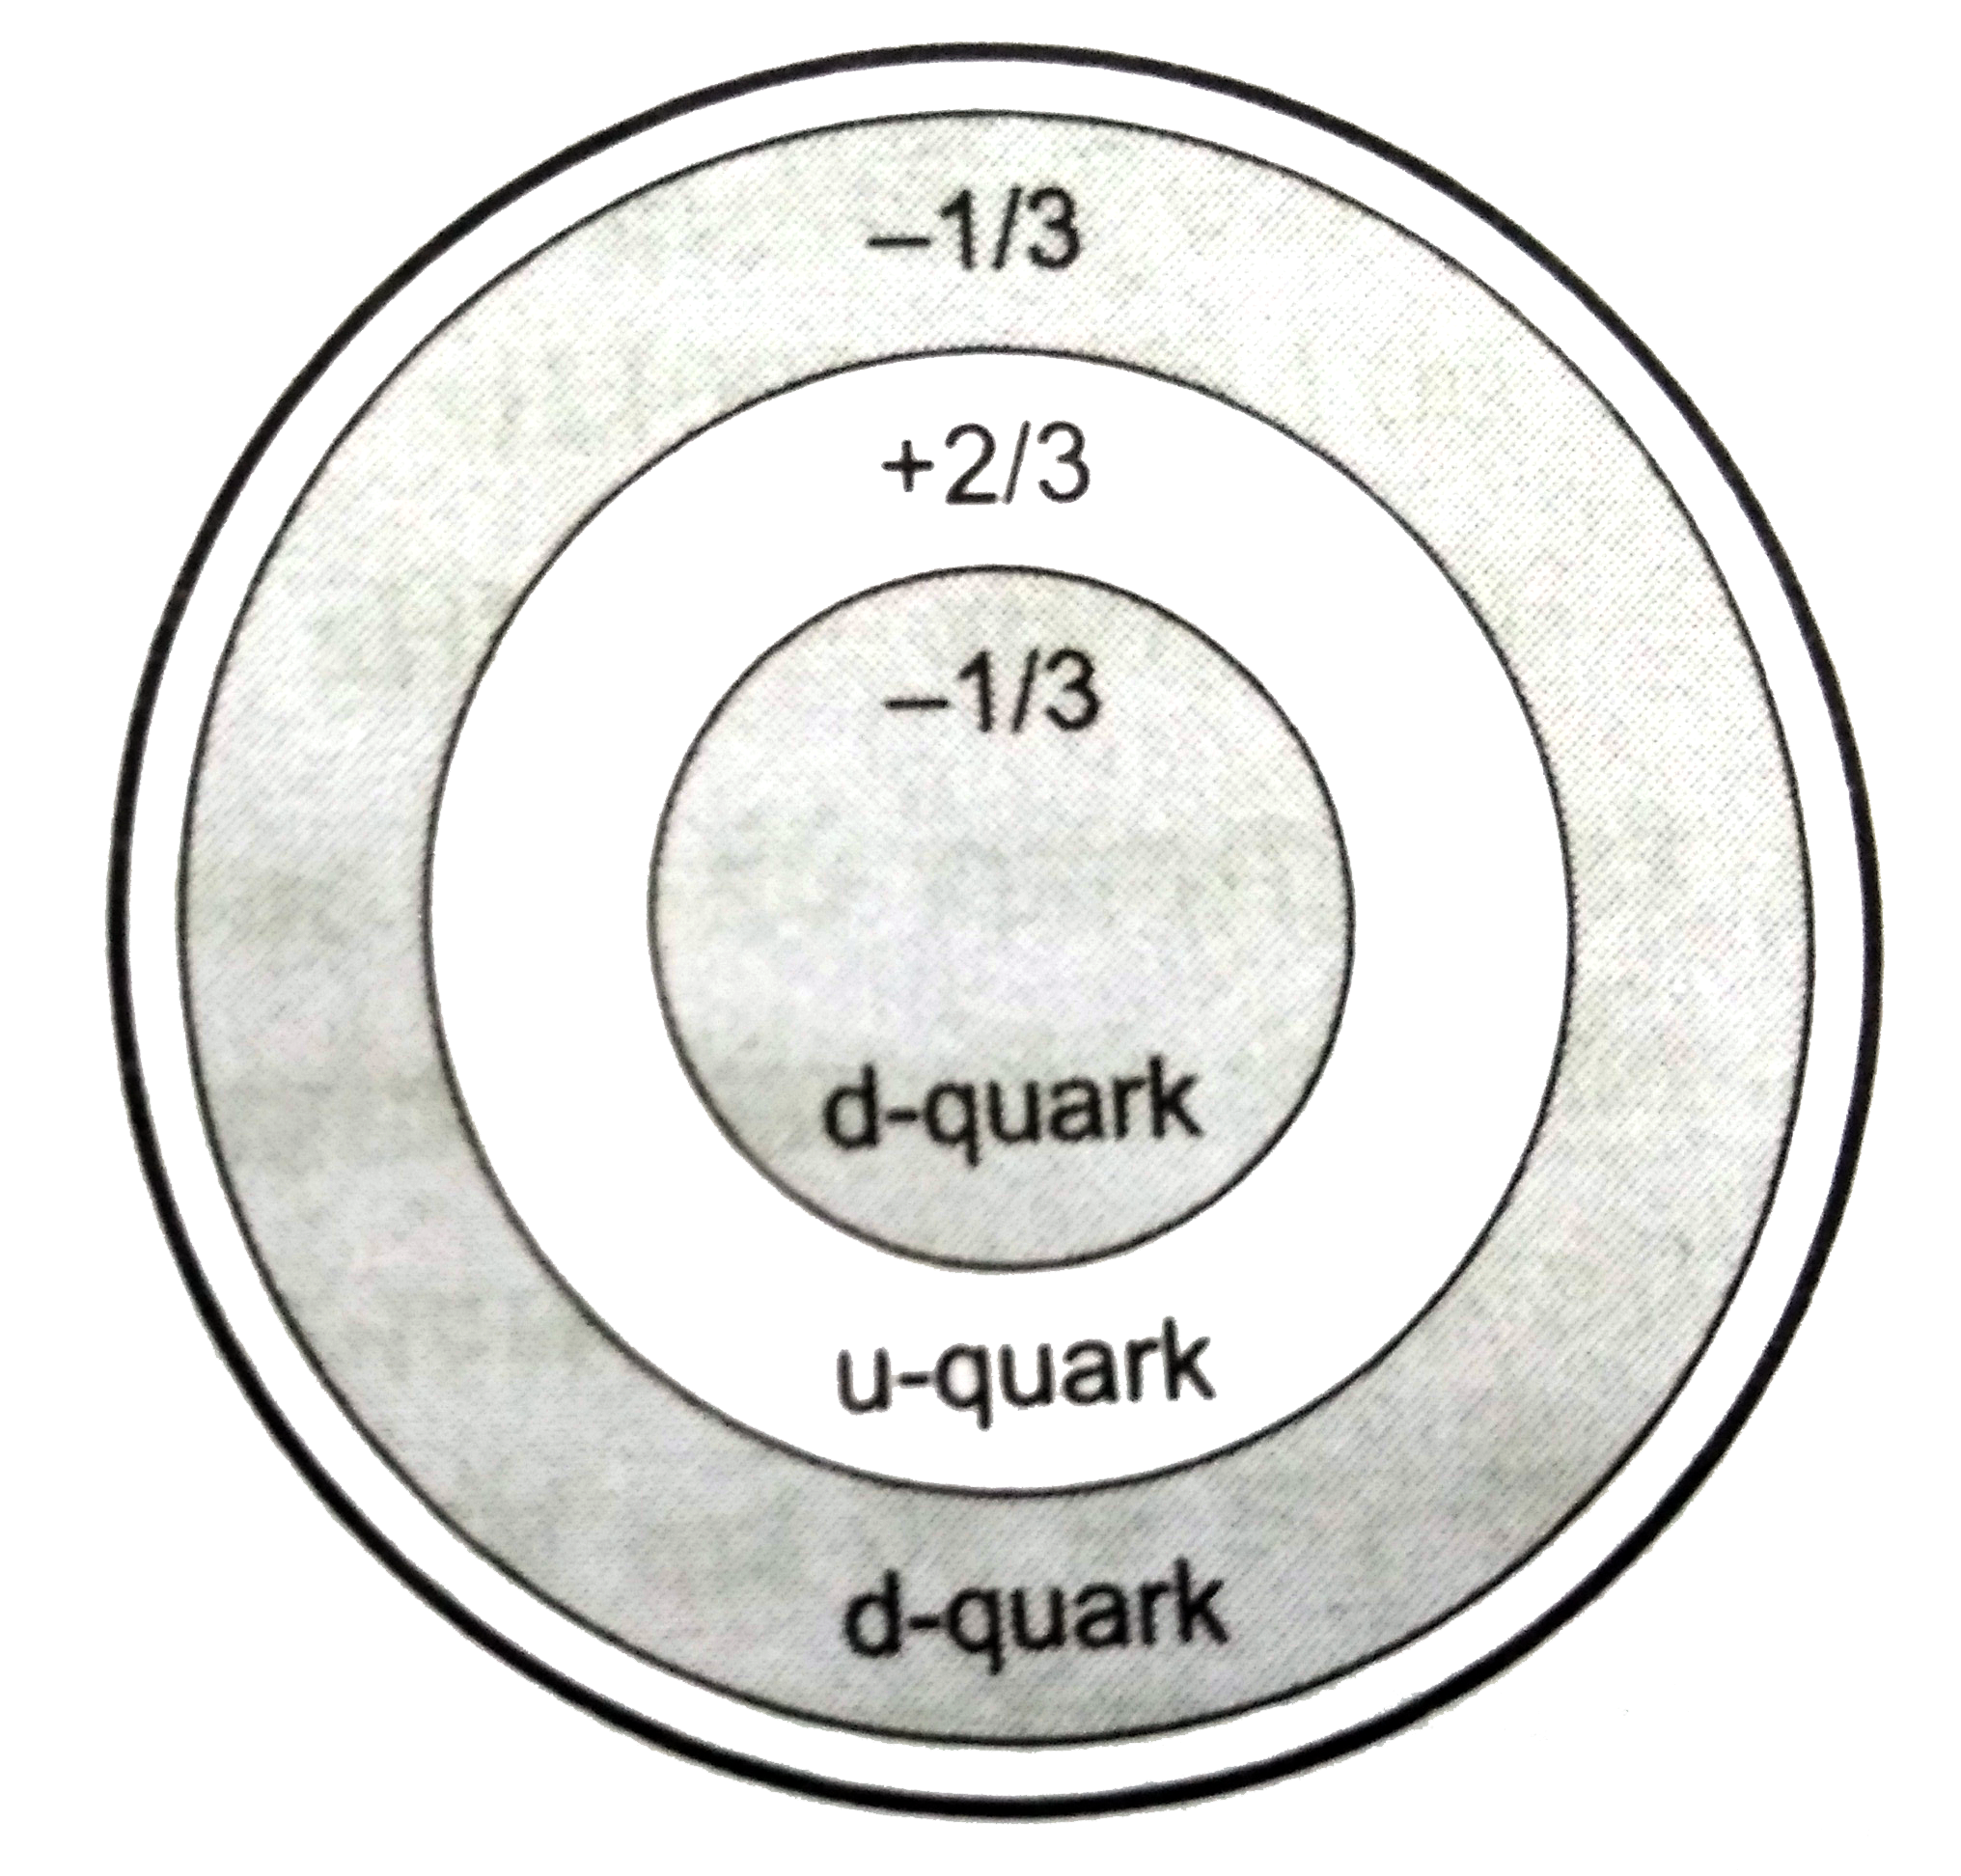 न्यूट्रॉन एक अनावेशित परंतु 9.66xx10^(-27) Am^(2)  का z - अक्षीय चुंबकीय आघूर्ण (magnetic moment)  रखनेवाला कण हैं । इसे न्यूट्रॉन के आंतरिक बनावट से समझा जा  सकता हैं । प्रायोगिक सत्यापन से यह ज्ञात हुआ हैं कि एक न्यूट्रॉन तीन मूलभूत क्वार्क एक +(2)/(3)e आवेश के अप - क्वार्क (u) तथा दो  - (1)/(3) e आवेश के डाउन - क्वार्क (d) से मिलकर बना हैं । तीनों क्वार्कों का युग्म इसे अनावेशित बनाता हैं । यदि ये क्वार्क गित में हो , तो एक चुंबकीय आघूर्ण उत्पन्न करते हैं । इस साधारण संरचना में यदि यह माना जाए कि u - क्वार्क घड़ी की दिशा की विपरीत दिशा में जबकि d - क्वार्क घड़ी की दिशा से r त्रिज्या वाले वृत्तीय पथ पर एक समरुप चाल v से चलते हैं , तो निम्नलिखित प्रश्नों के उत्तर दें ।     u - क्वार्क के घूमने के कारण उत्पन्न विद्युत -धारा का मान होगा